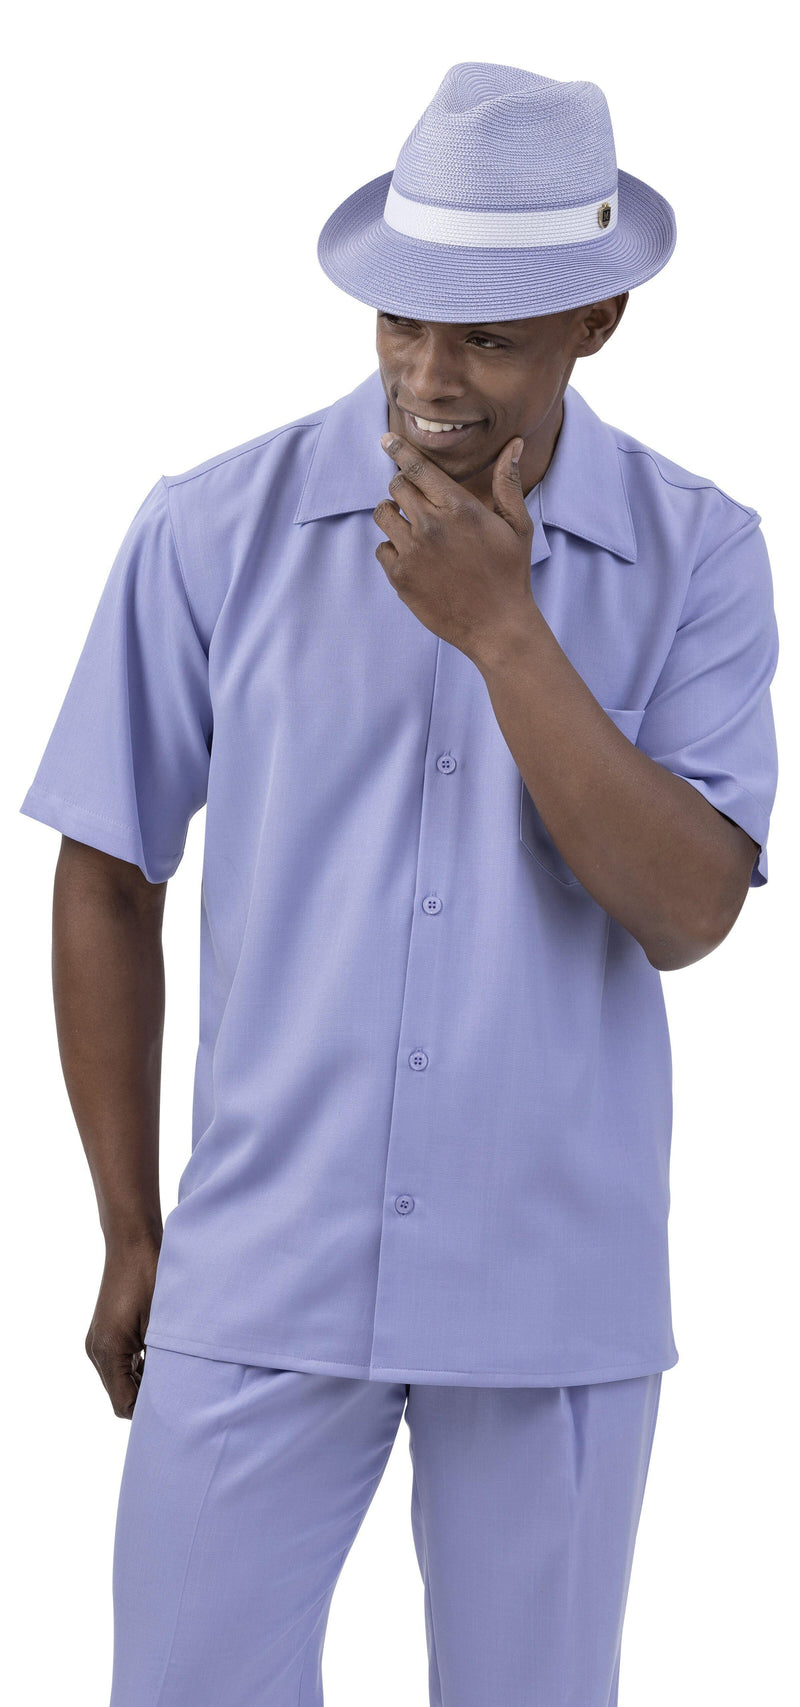 Montique Men's 2 Piece Short Sleeve Walking Suit Solid Lavender - Upscale Men's Fashion